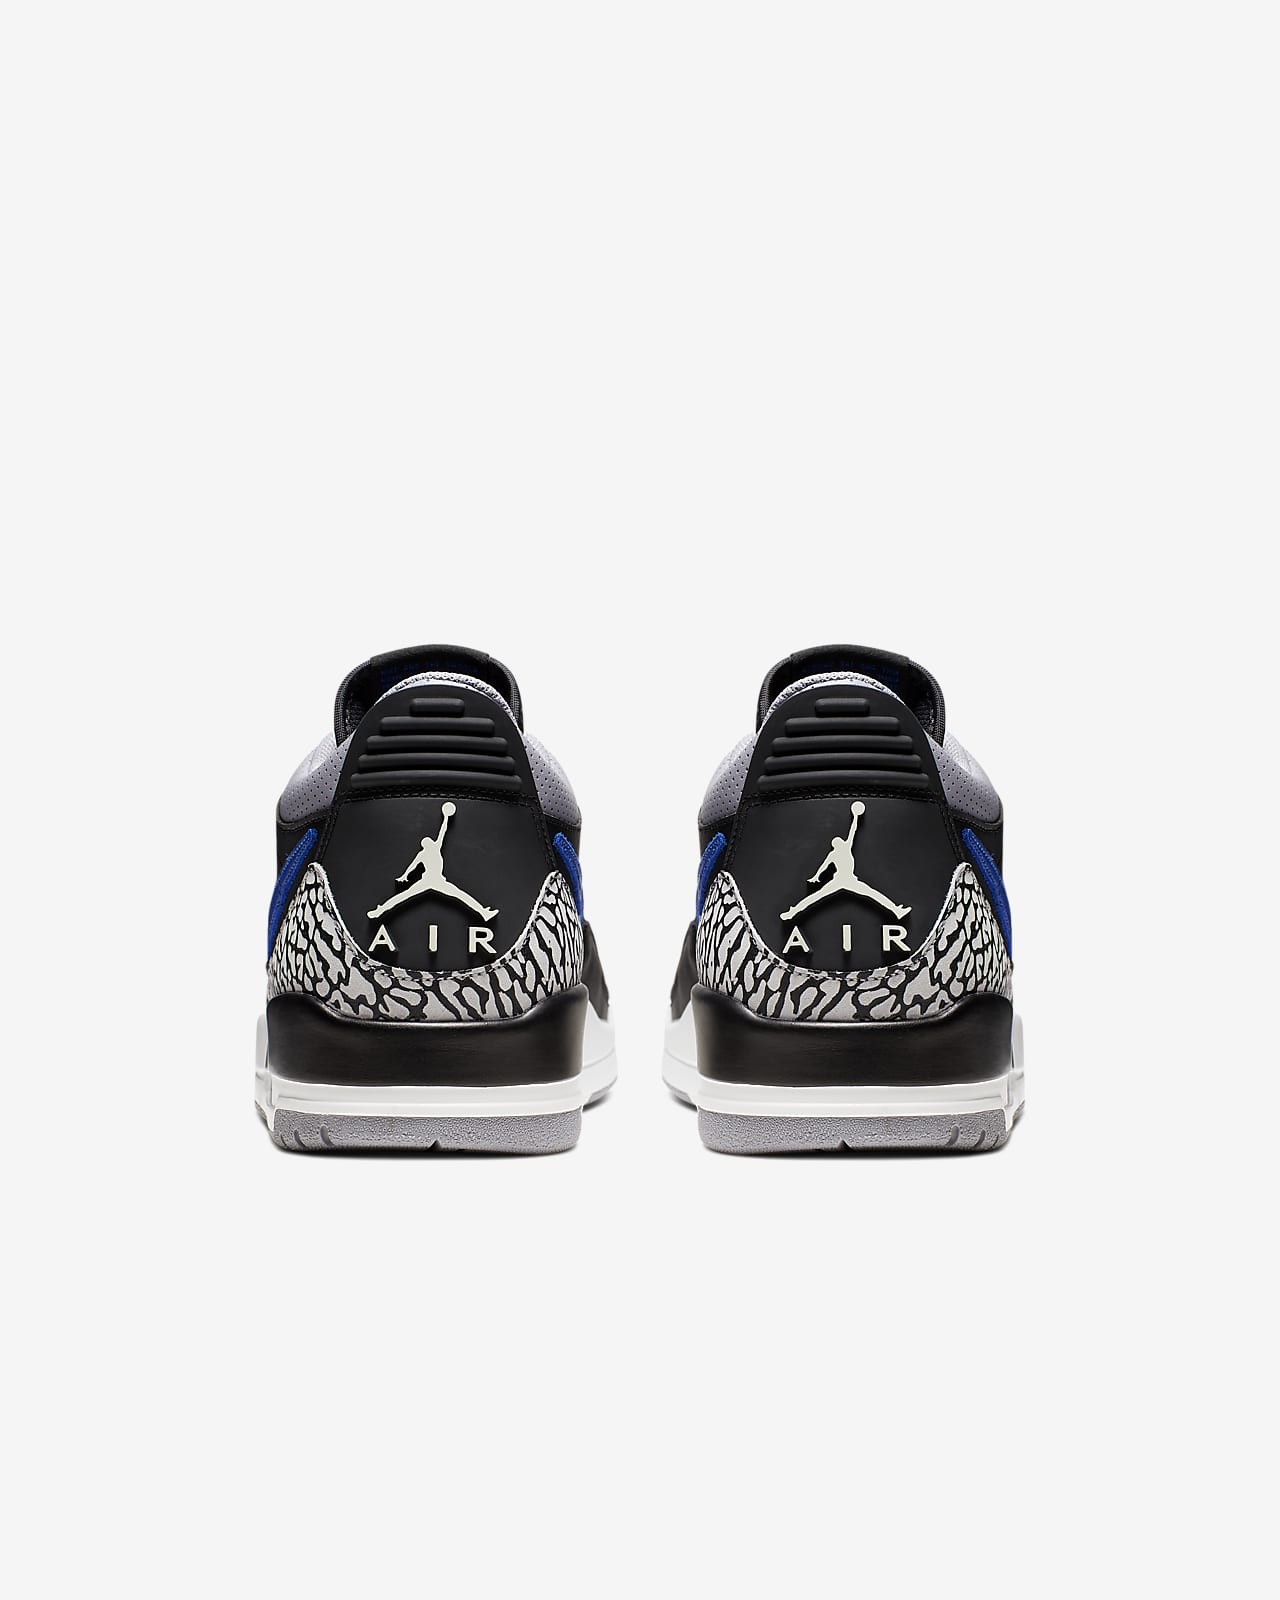 Air Jordan Legacy 312 Low Men's Shoe 